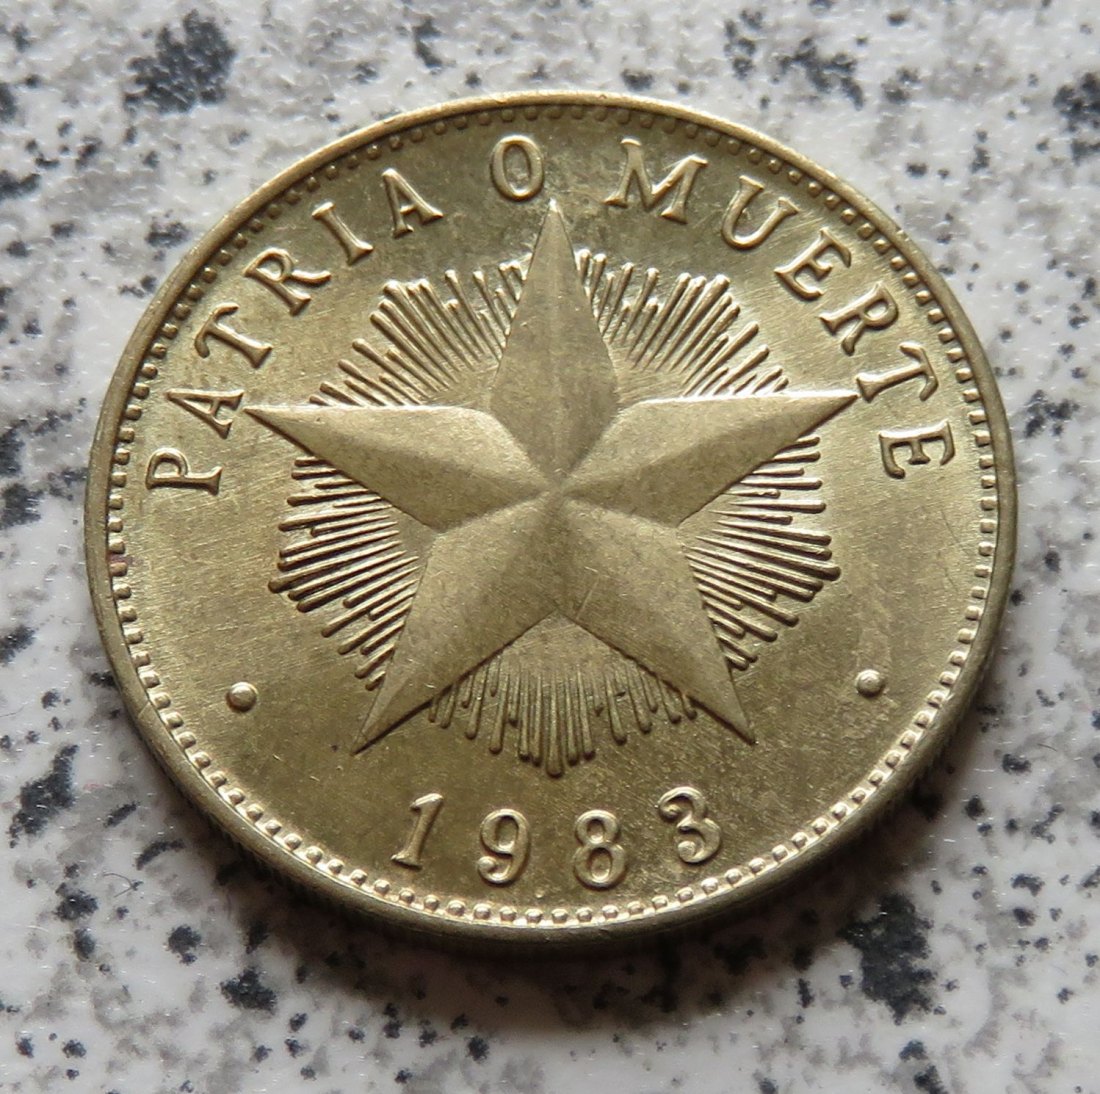  Cuba 1 Peso 1983   